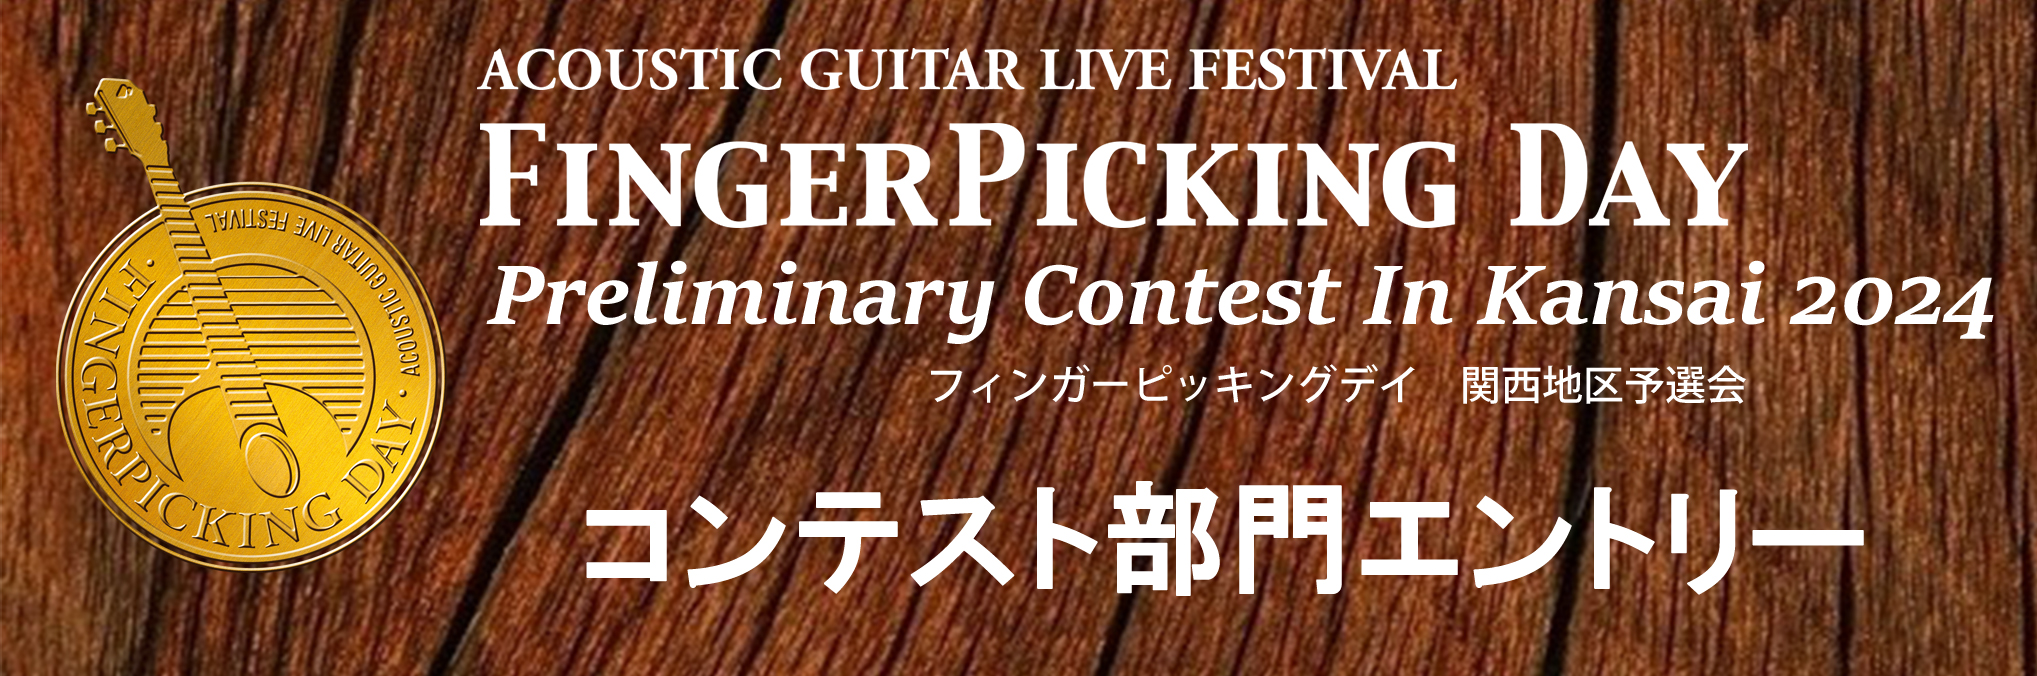 1/20 (土) Finger Picking Day 2024 関西地区予選 コンテスト部門エントリー